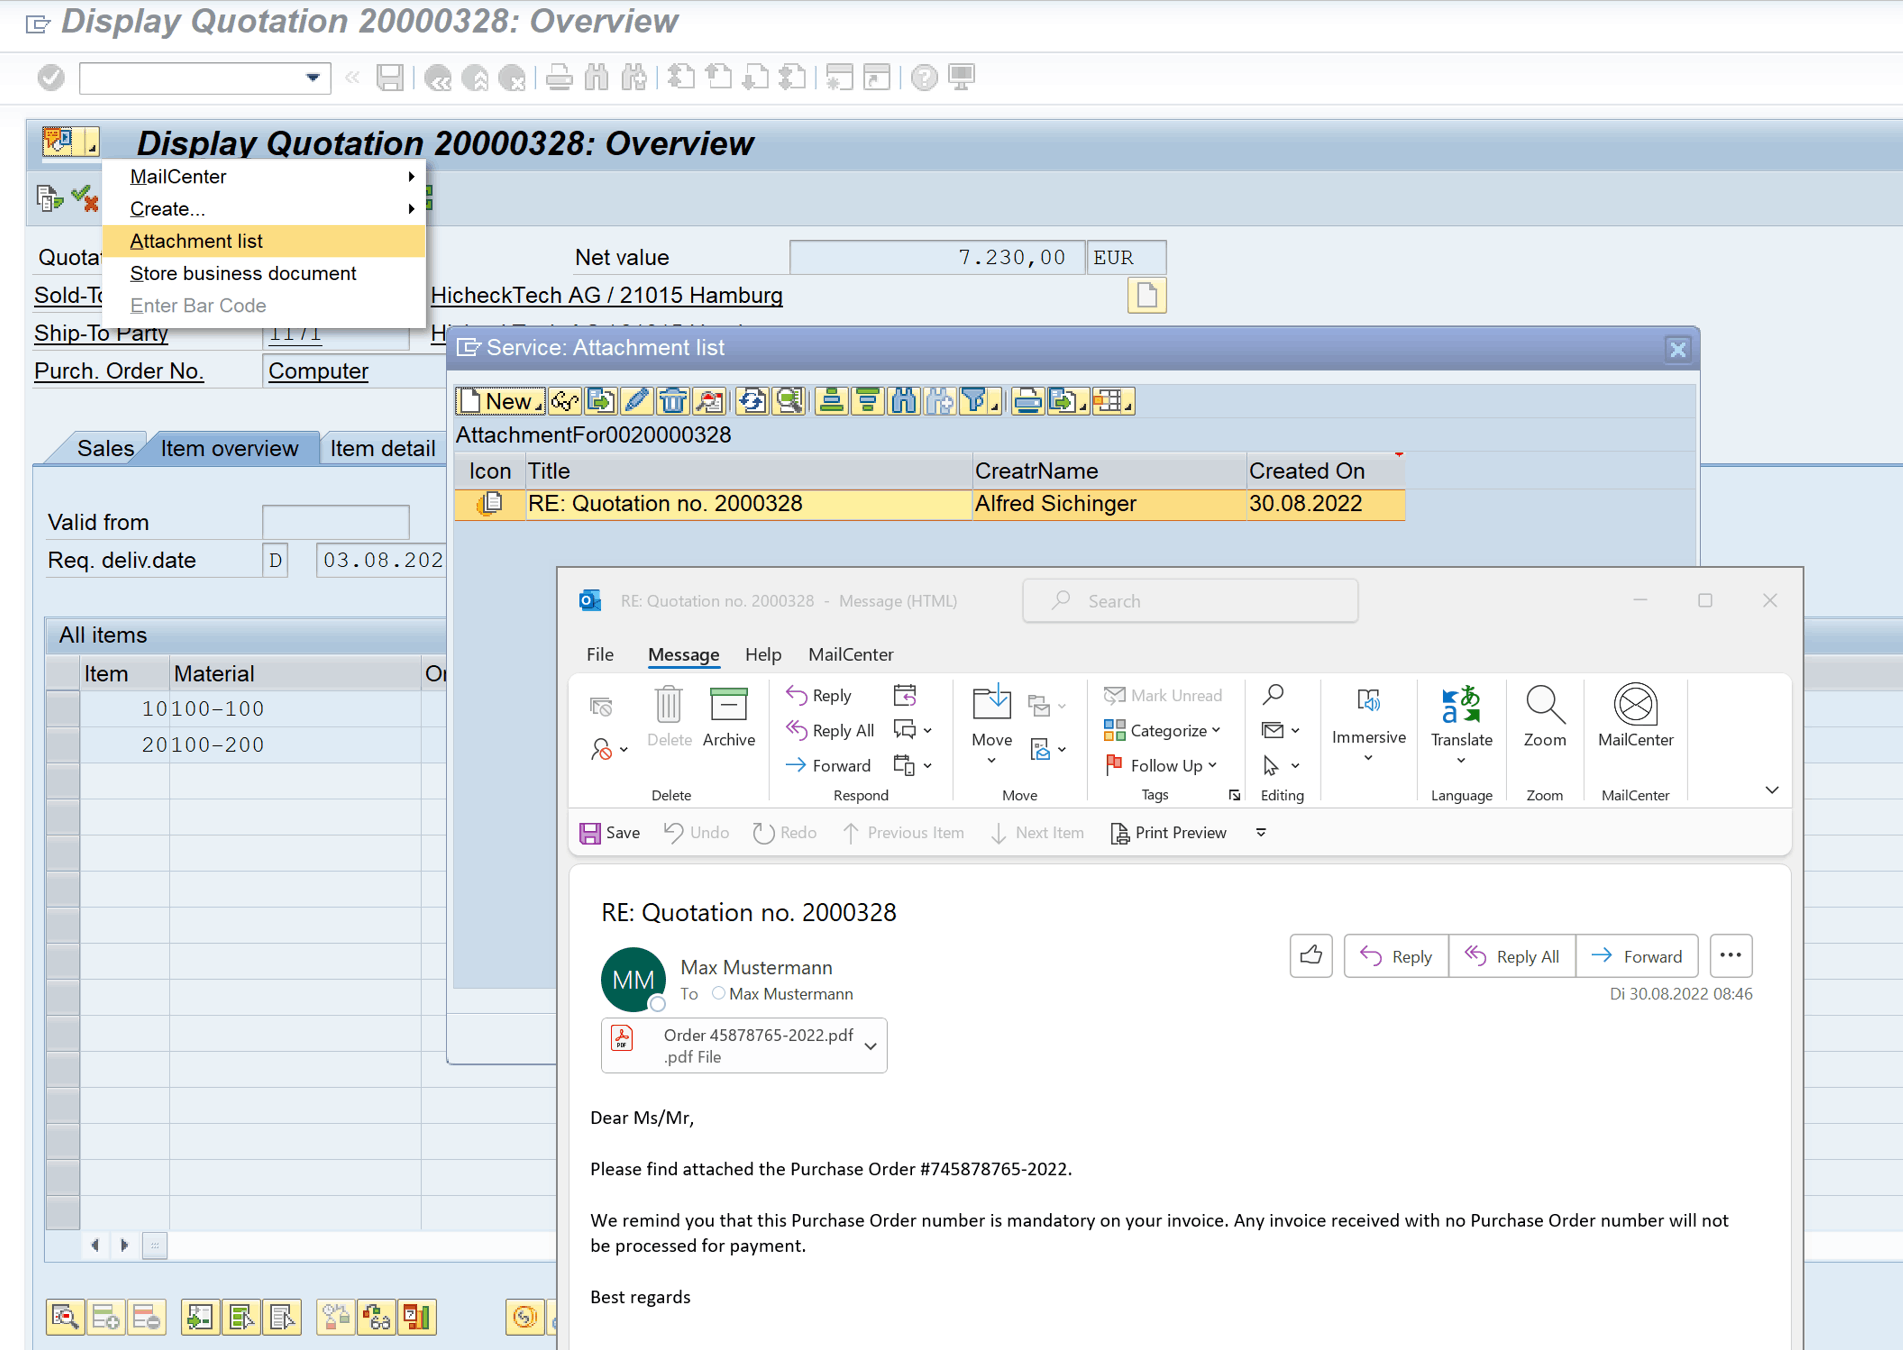 Recibo de SAP Outlook - Recibir informe sobre el pedido